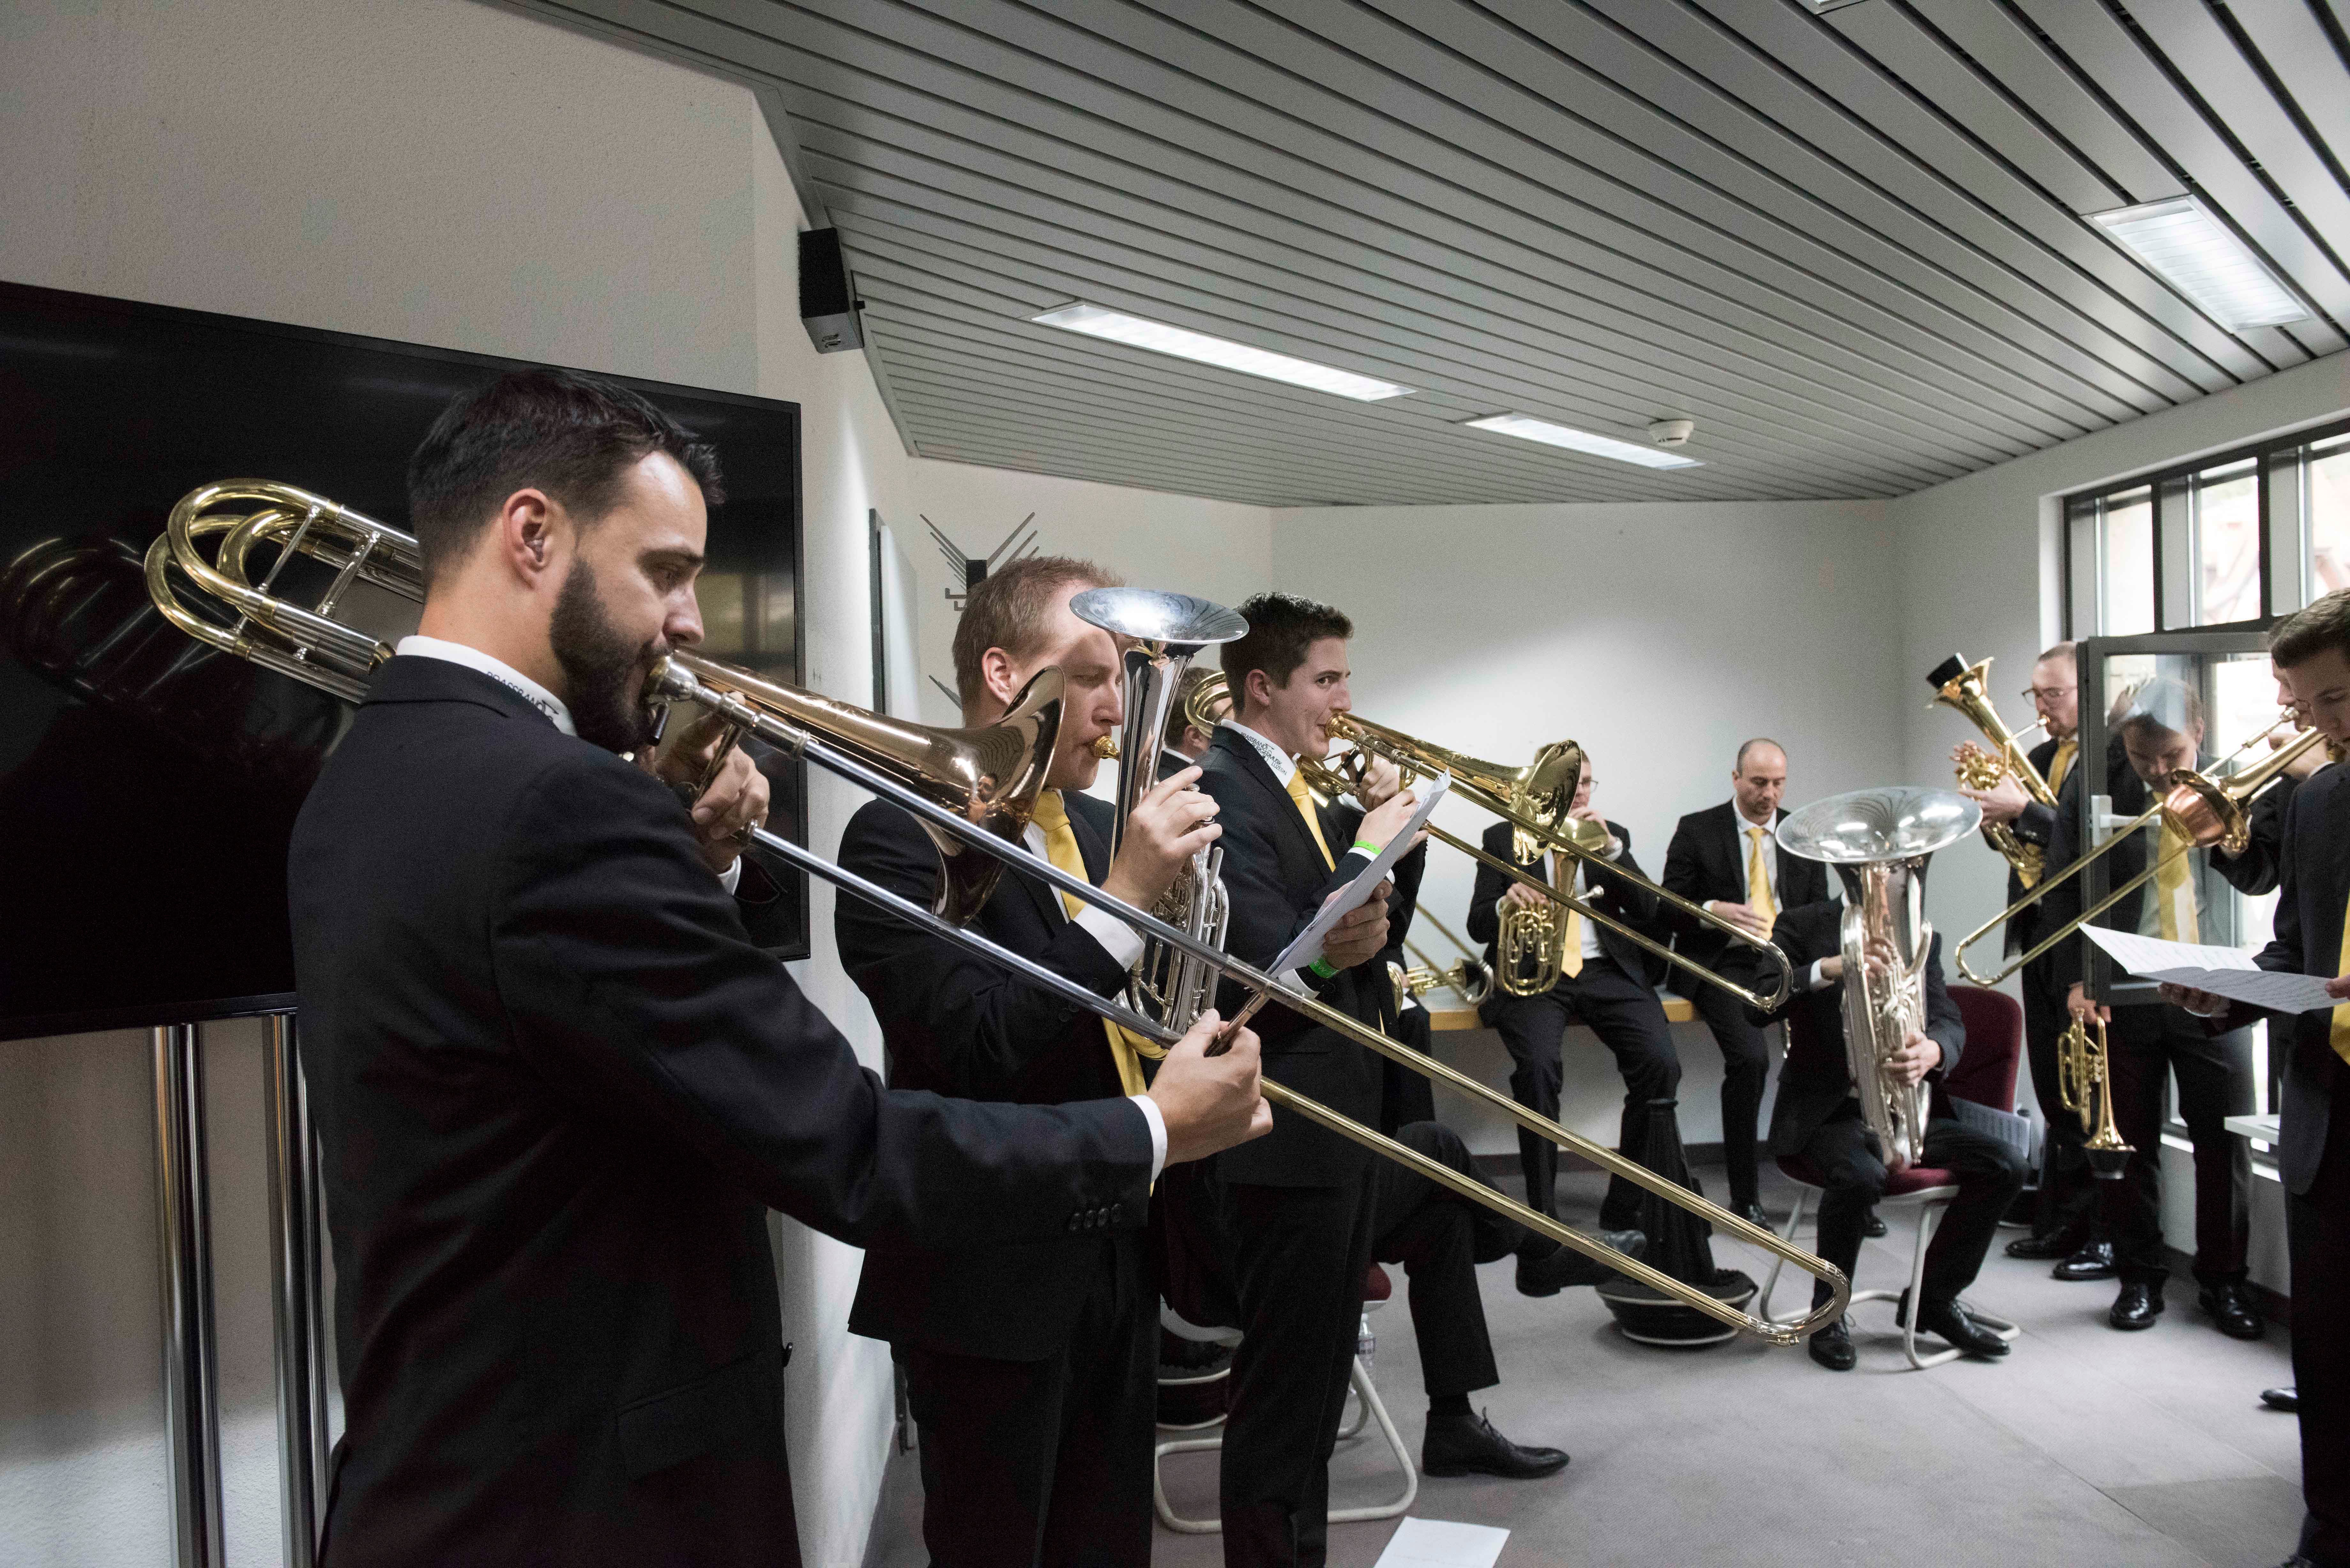 Die Töne werden getroffen bei der Brass Band Bürgermusik Luzern.